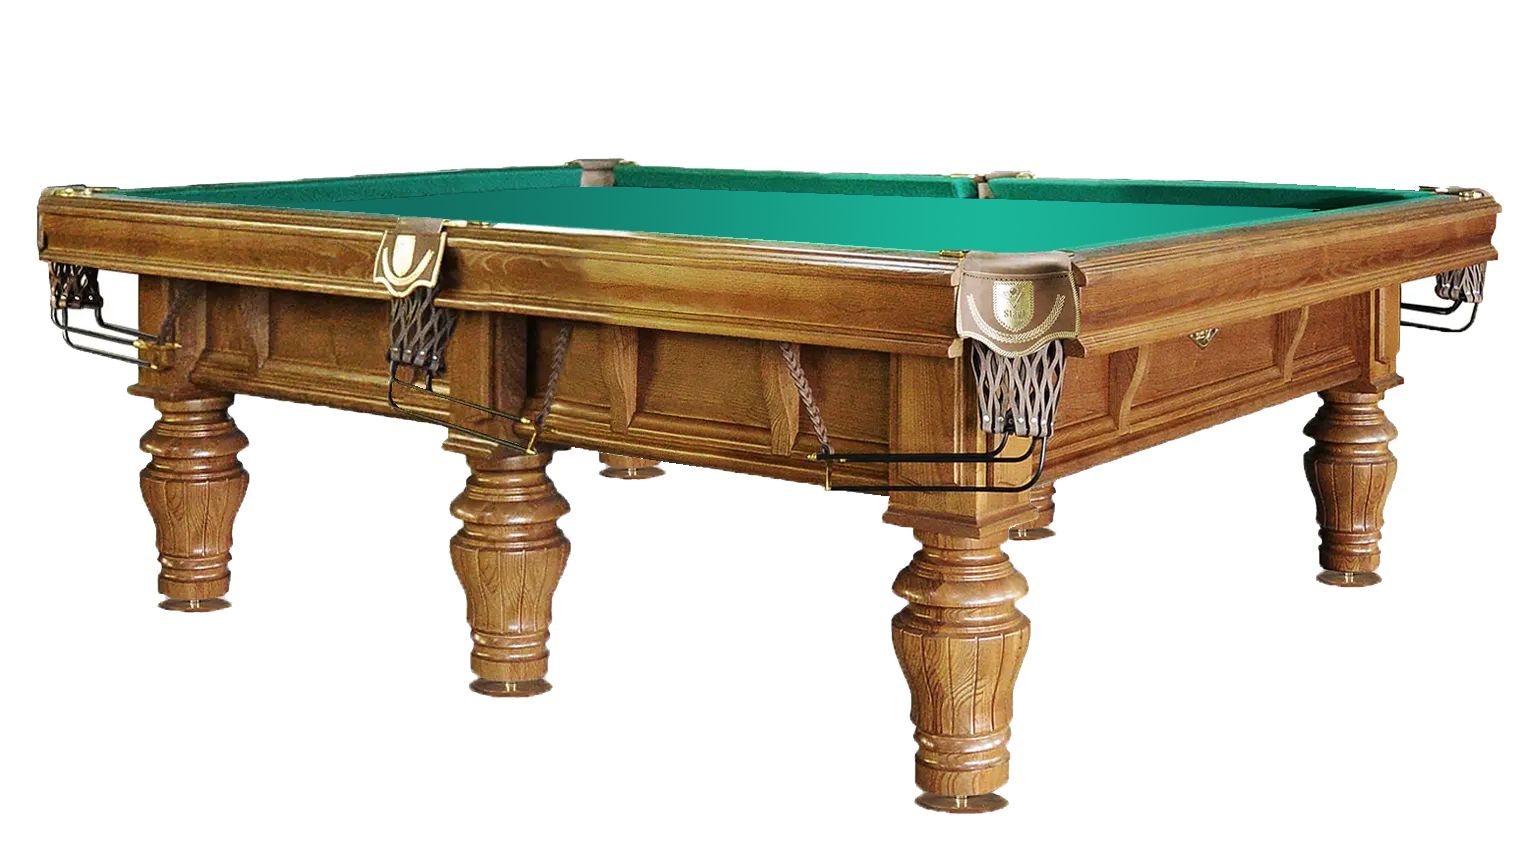 Бильярдные столы большие. Бильярдный стол 4 фута bm003. Бильярдный стол Billiard-Ball 9 футов (пул). Бильярдный стол ”Камелот” пул.